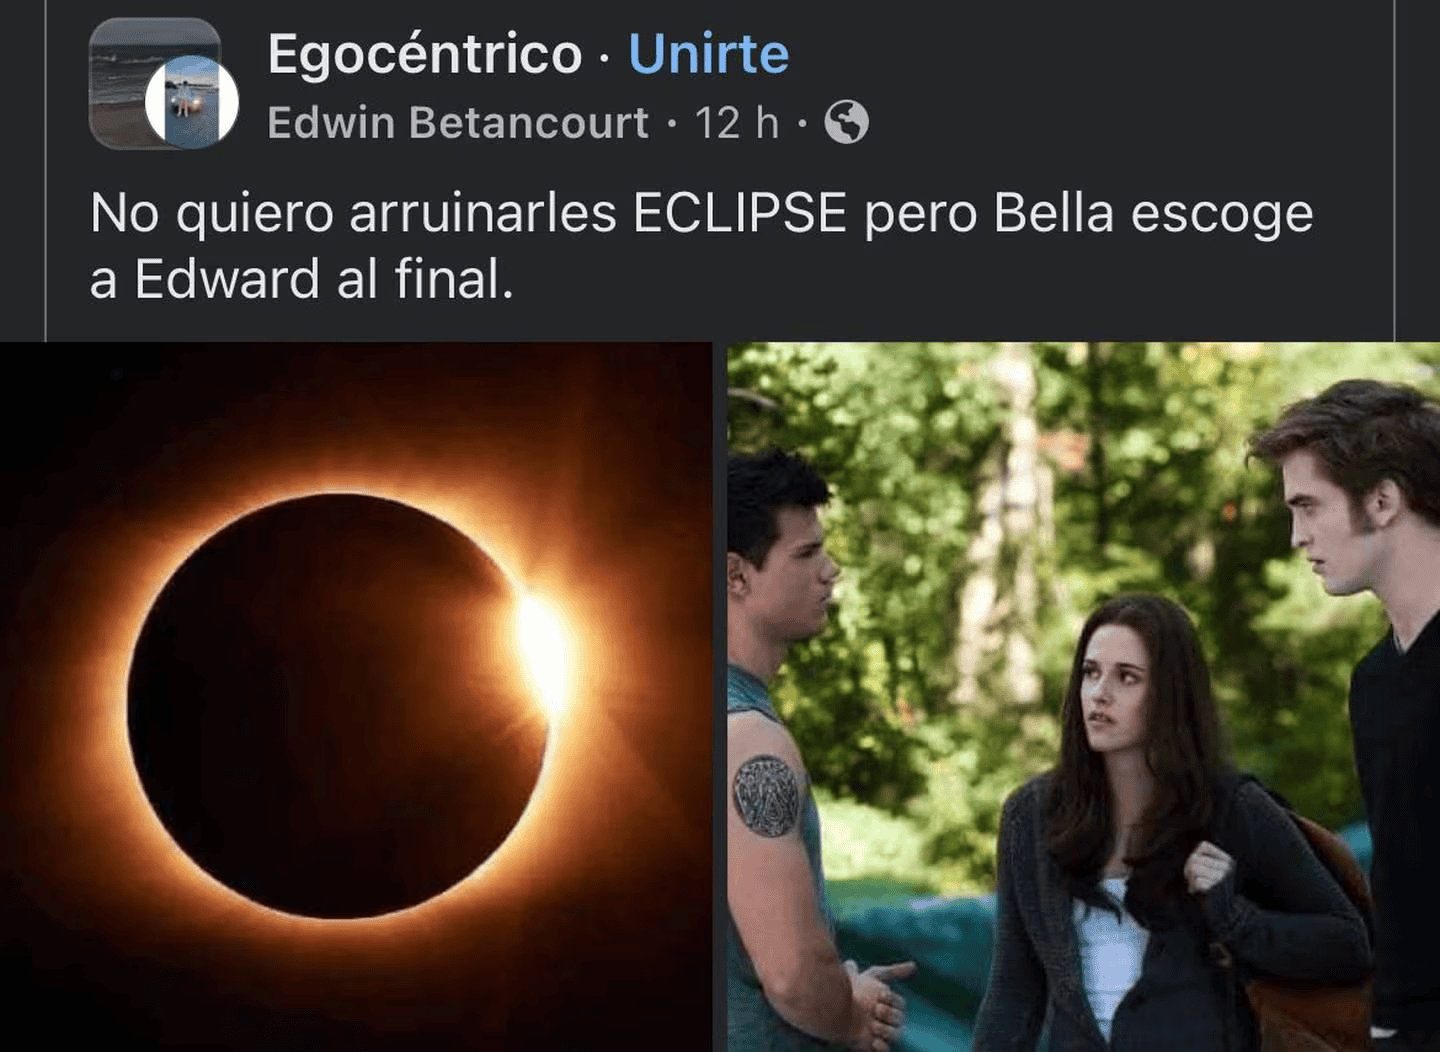 Eclipse solar memes